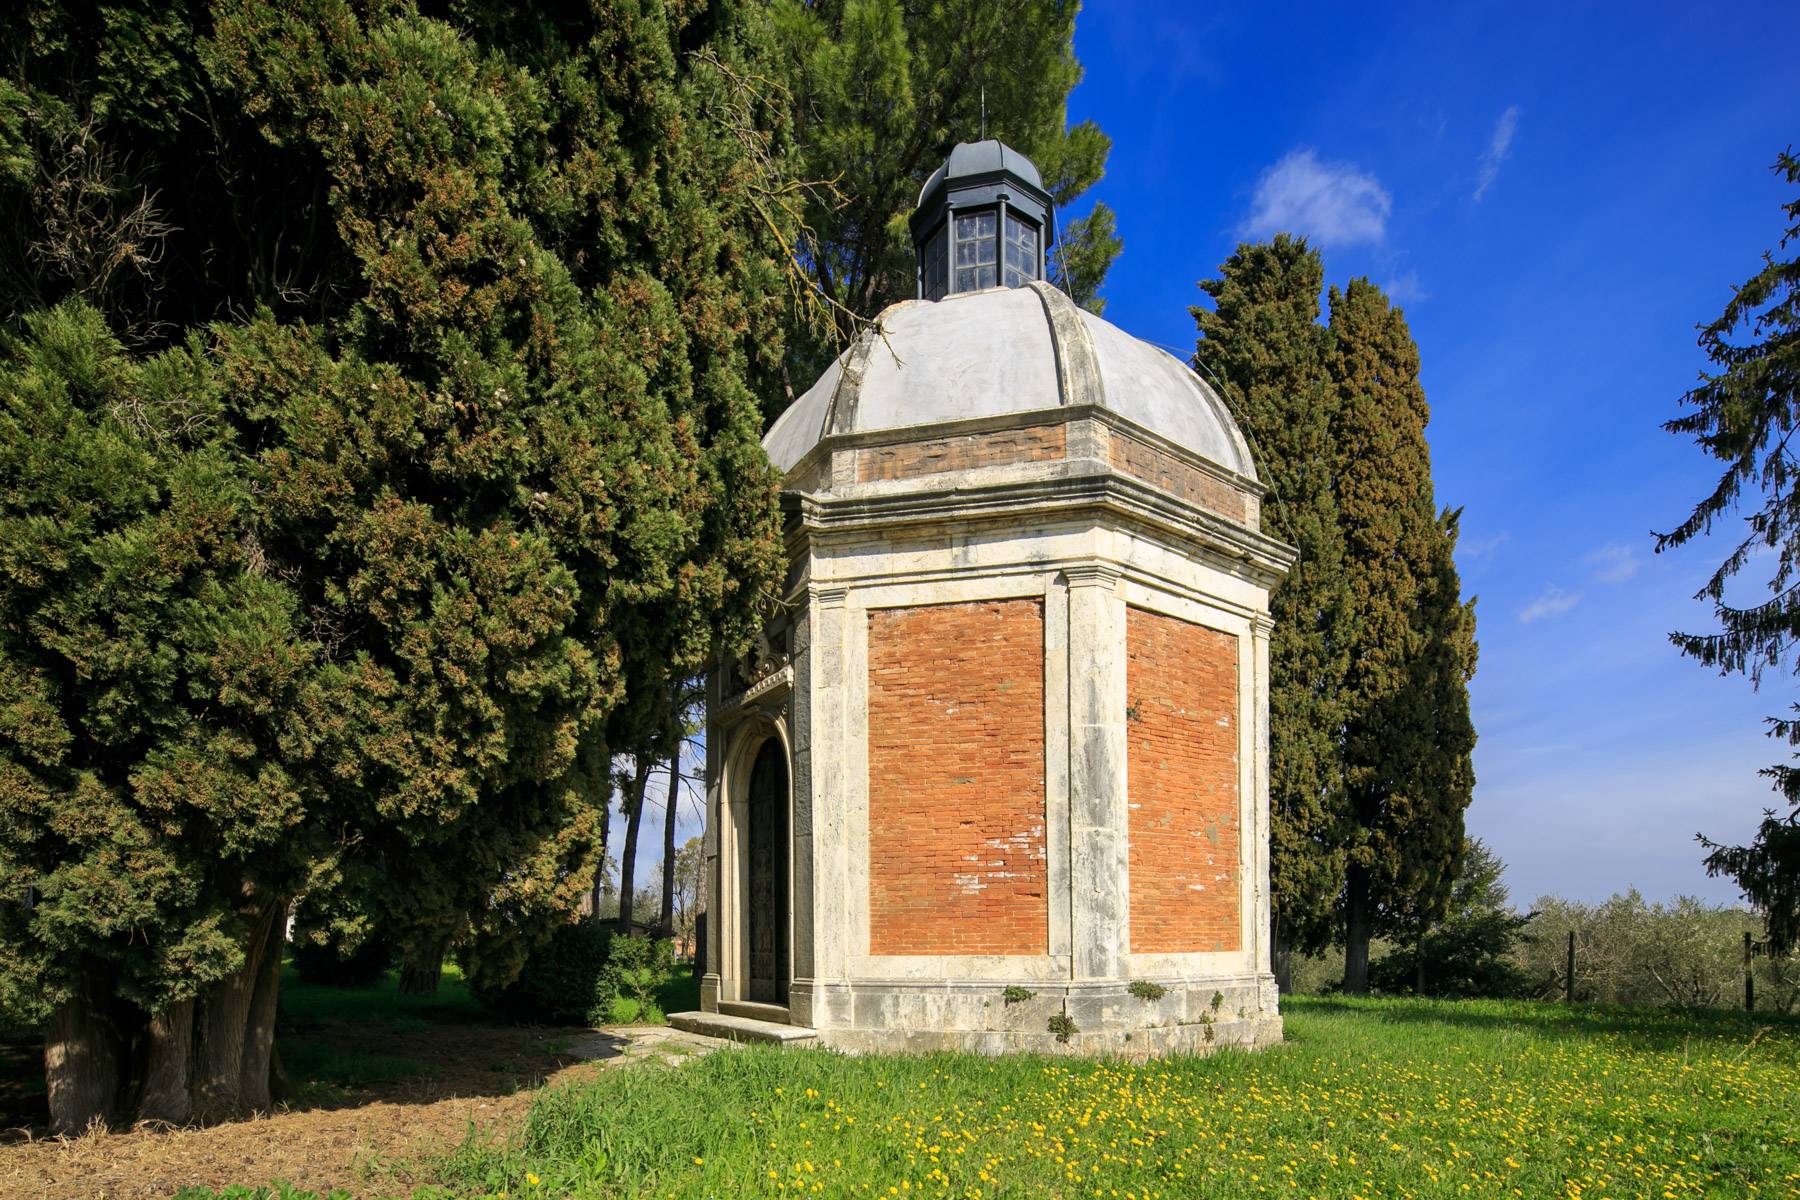 Villa in Vendita a Montepulciano: 5 locali, 2400 mq - Foto 22